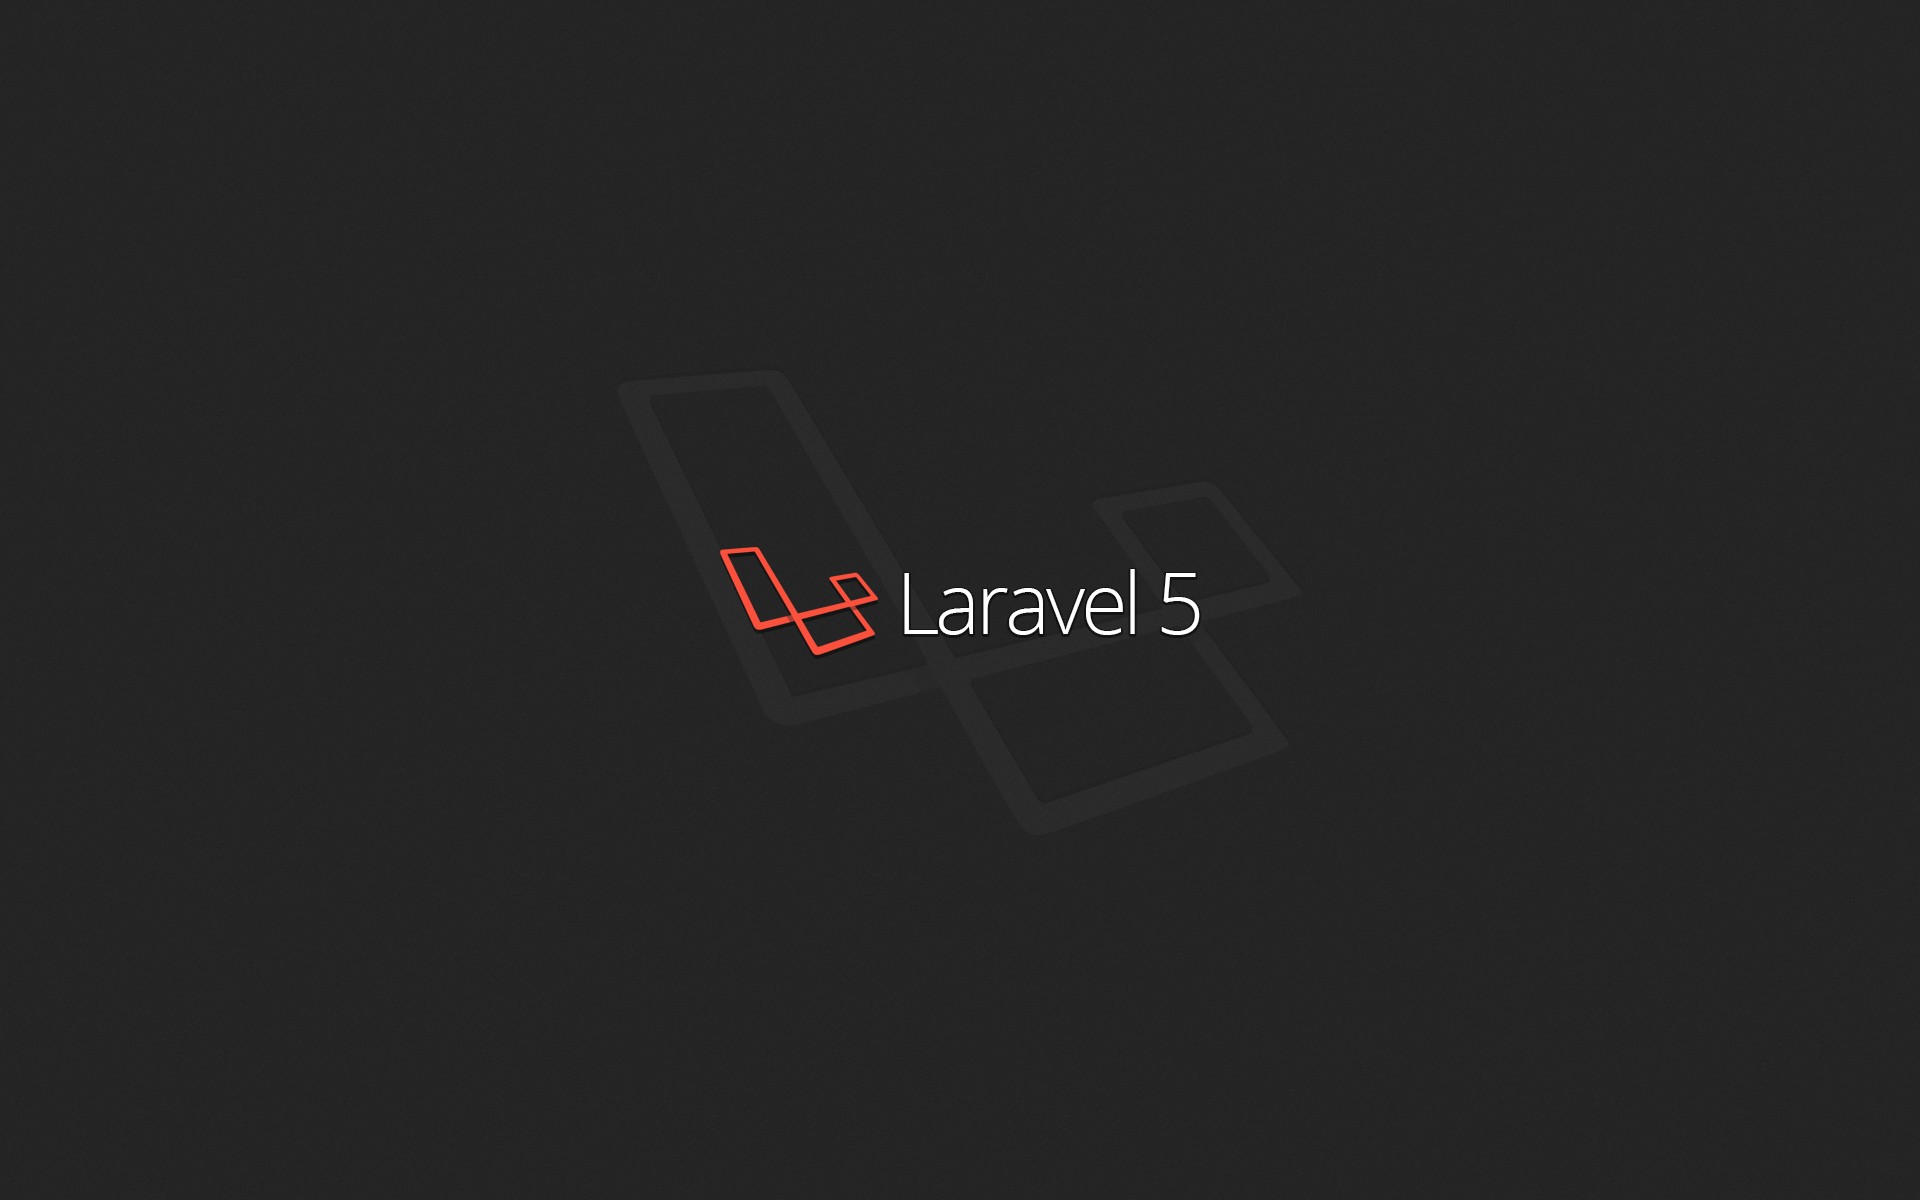 Với Laravel programming, bạn có thể tạo ra các ứng dụng web tuyệt vời một cách dễ dàng và nhanh chóng. Hãy khám phá các tính năng độc đáo của Laravel programming trong hình ảnh liên quan và biến ước mơ của bạn thành hiện thực.